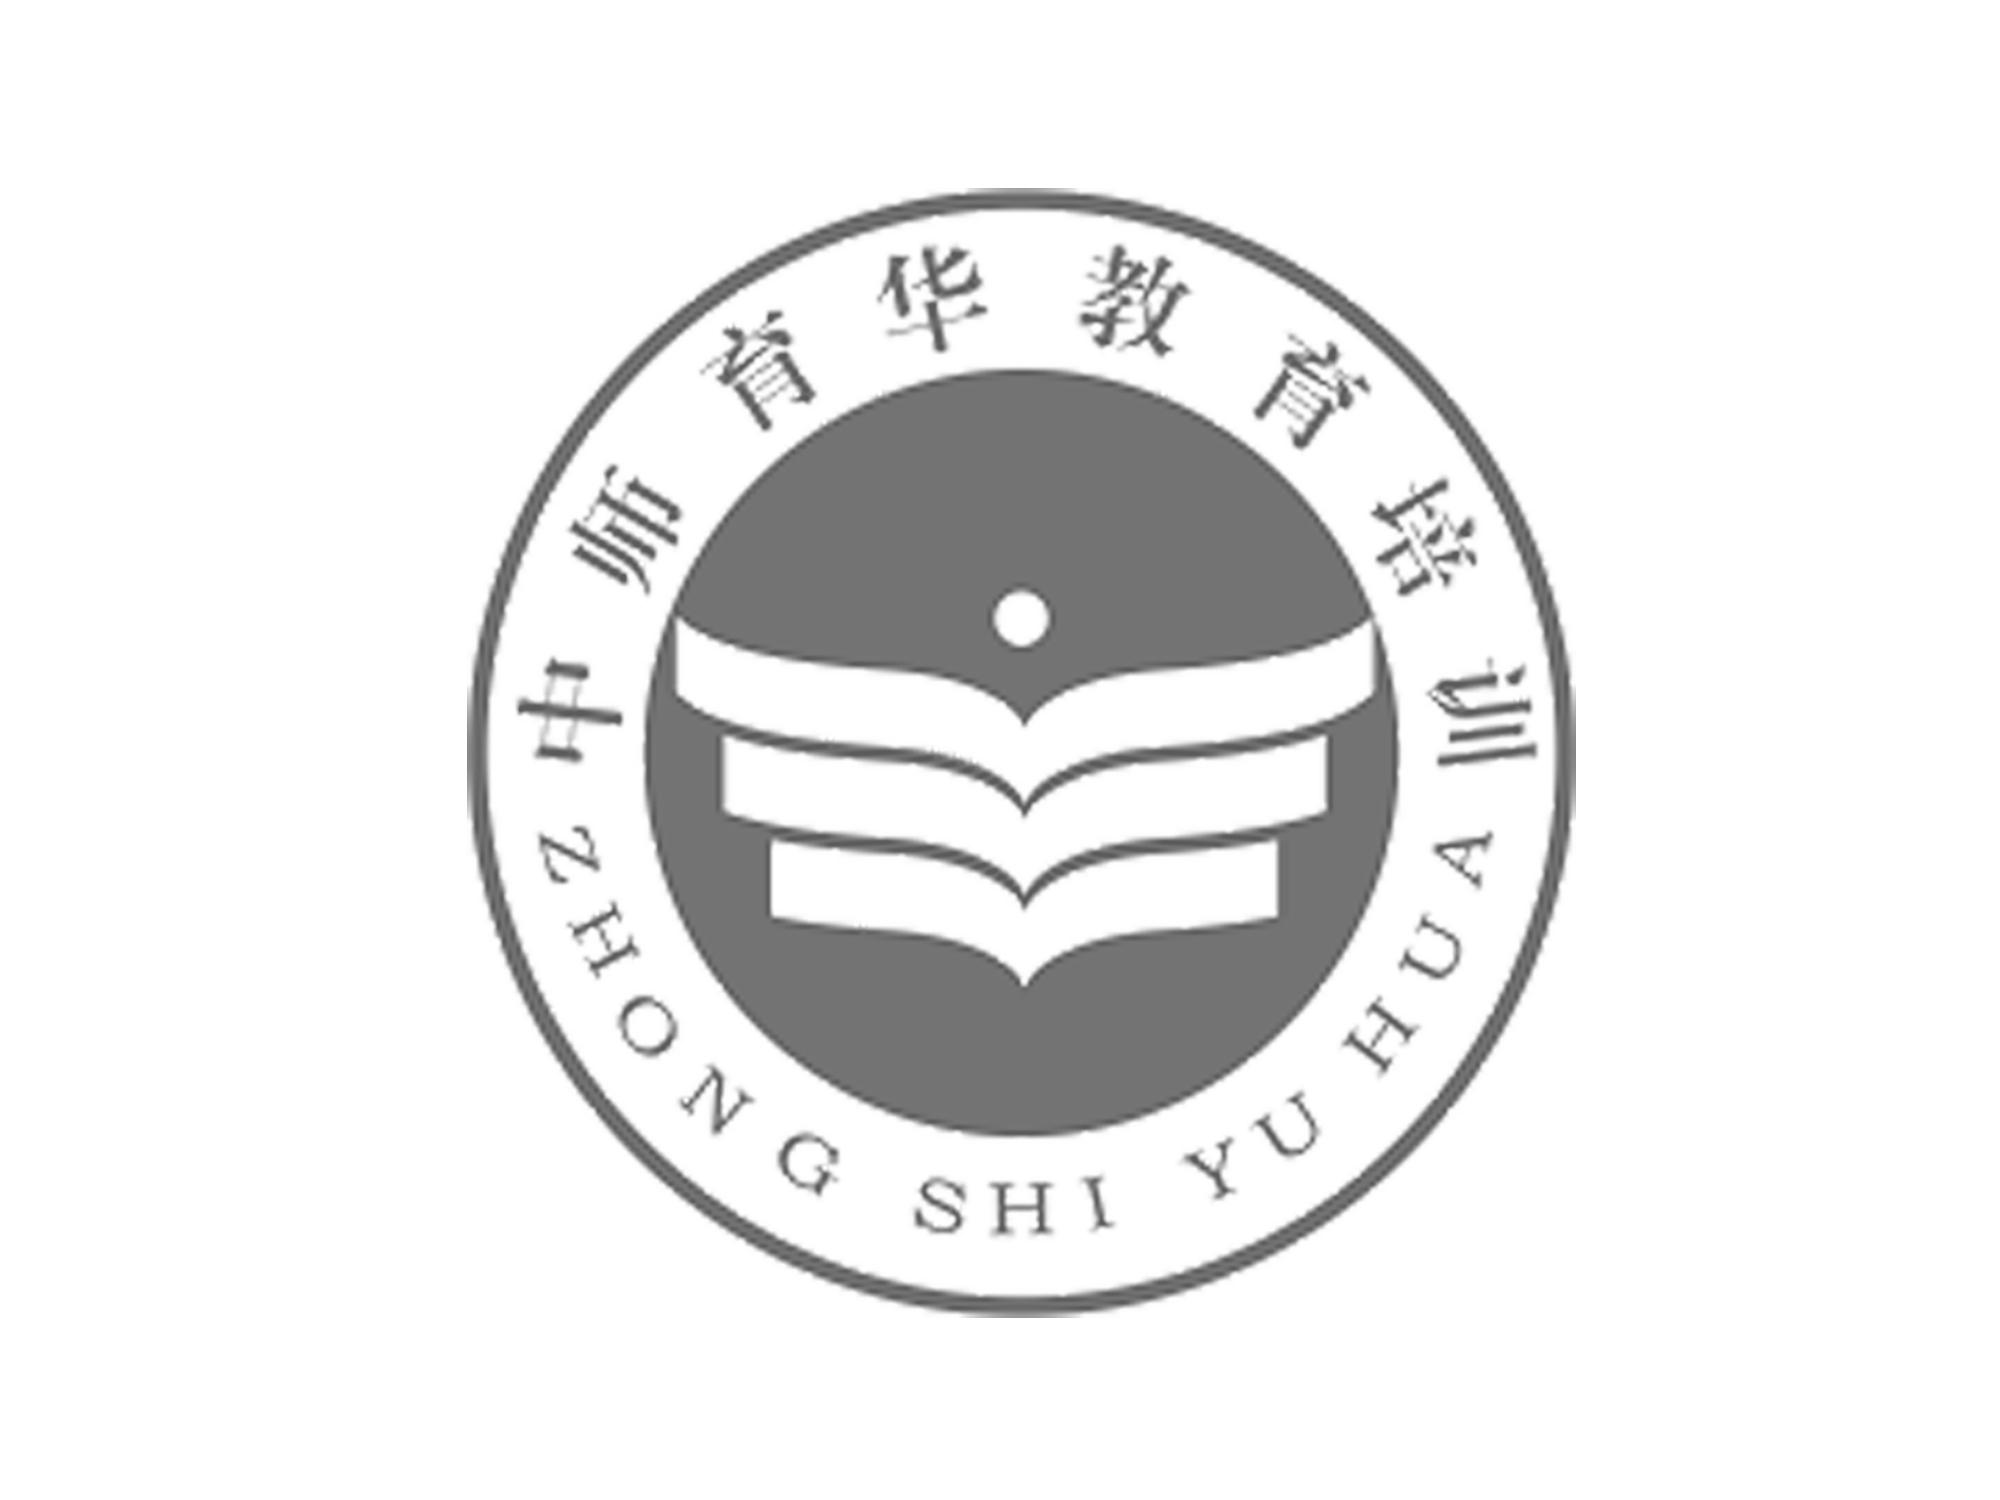 商标文字中师育华教育培训 zhong shi yu hua商标注册号 24085021